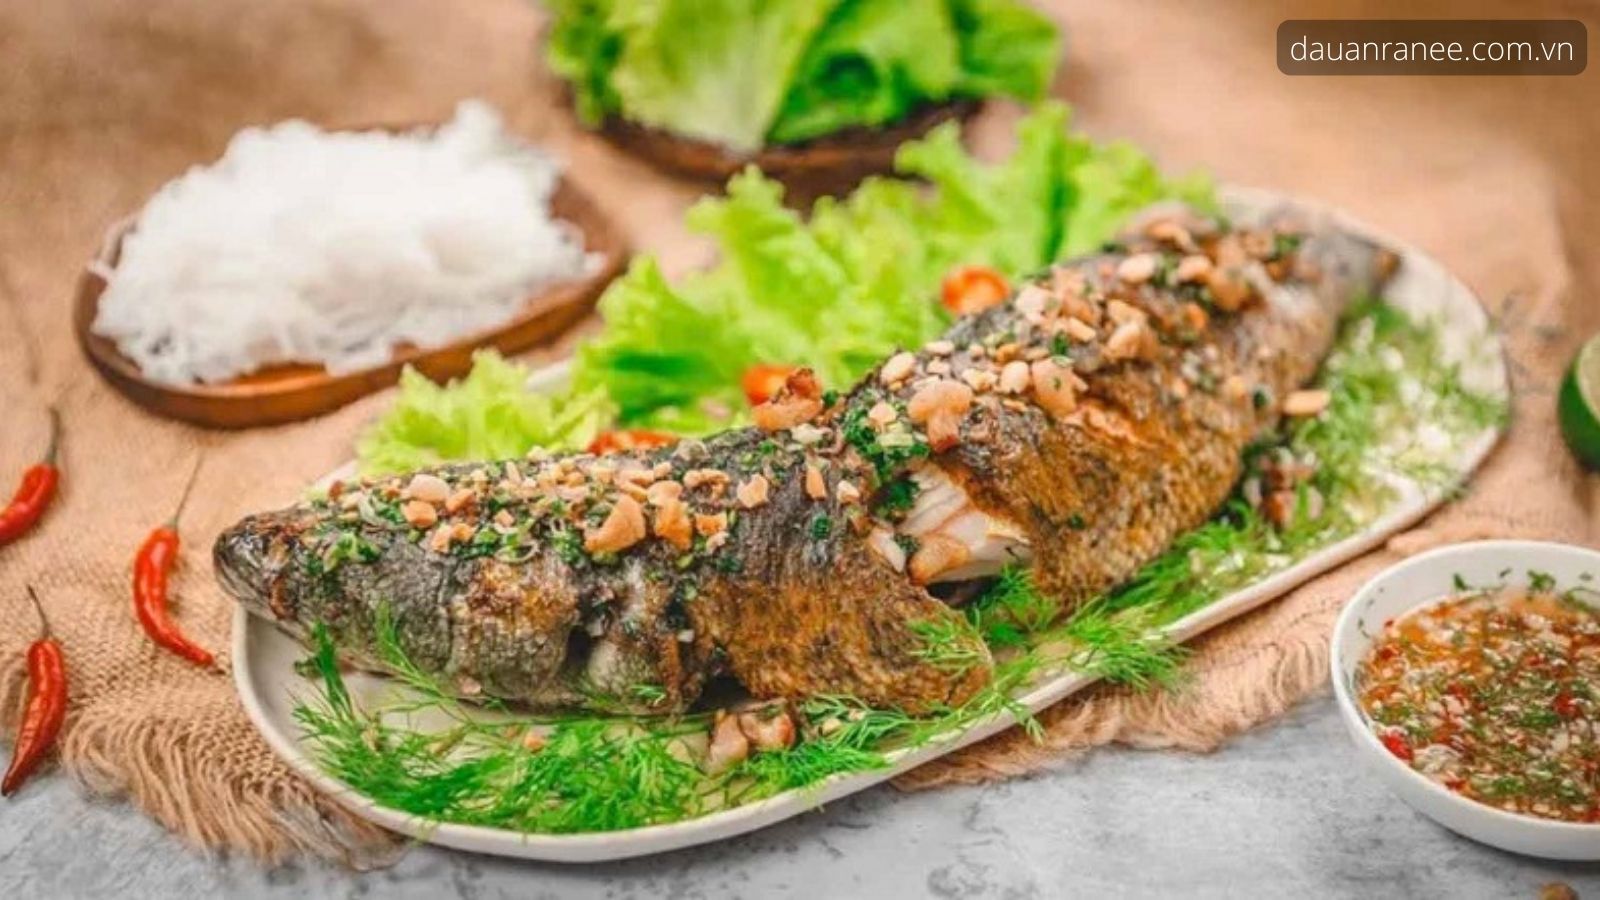 Cá Chuối Đầm Vân Long - Món ăn ngon và nổi tiếng